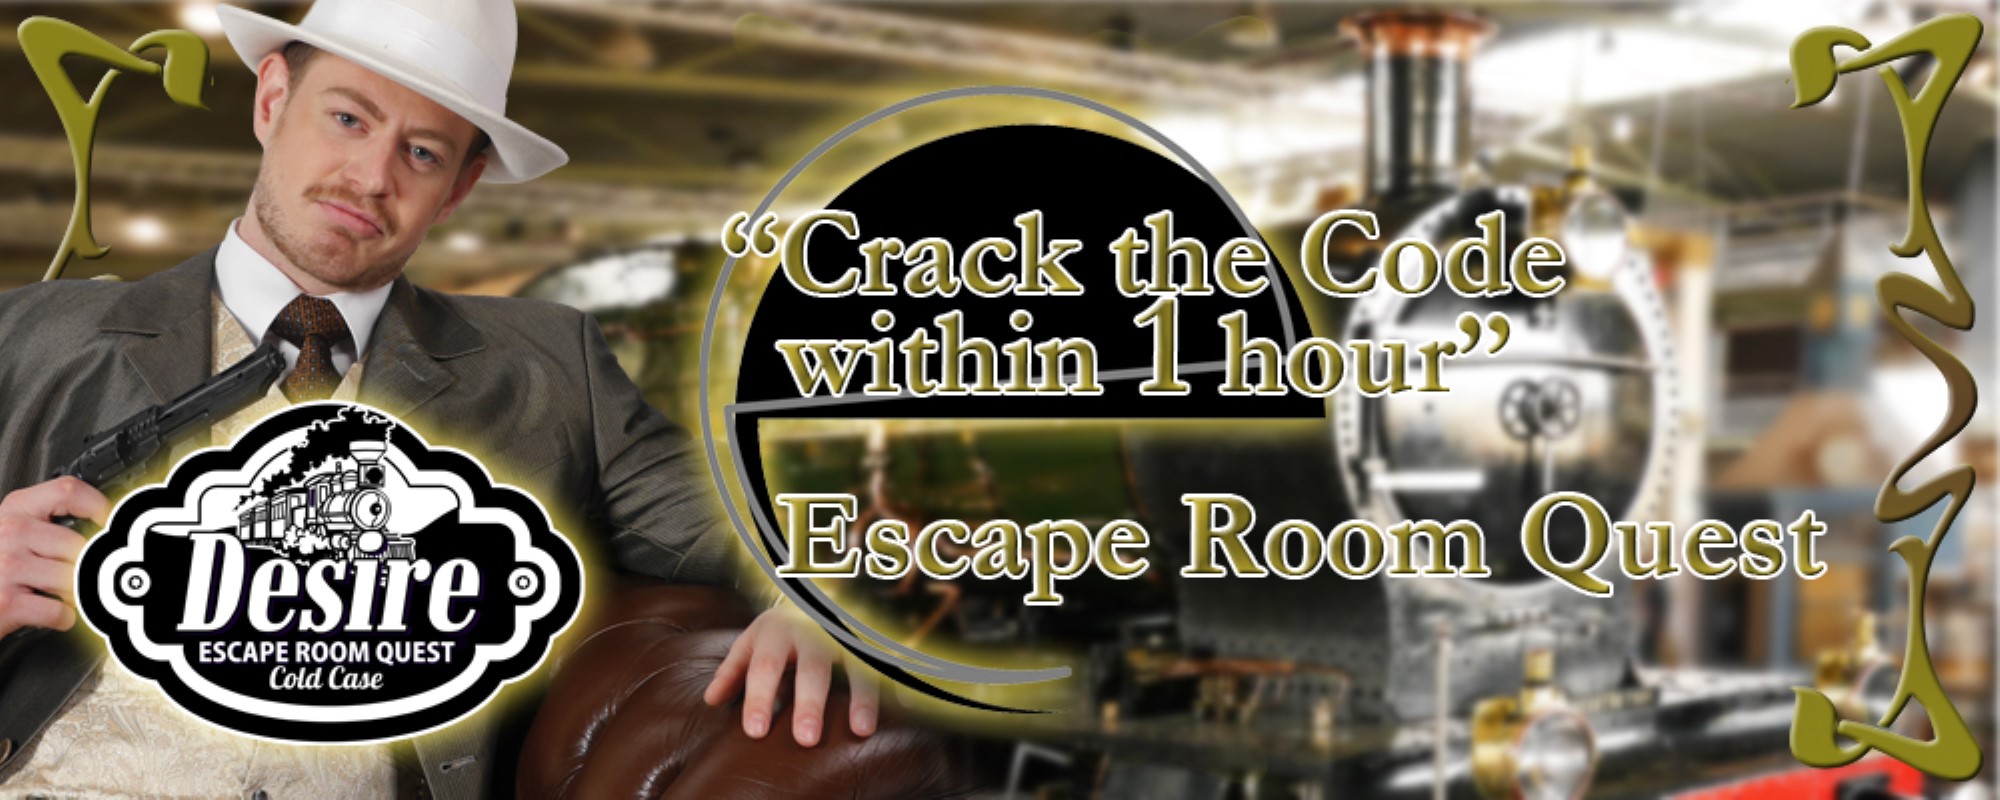 Escape Room Quest - HA-events.nl